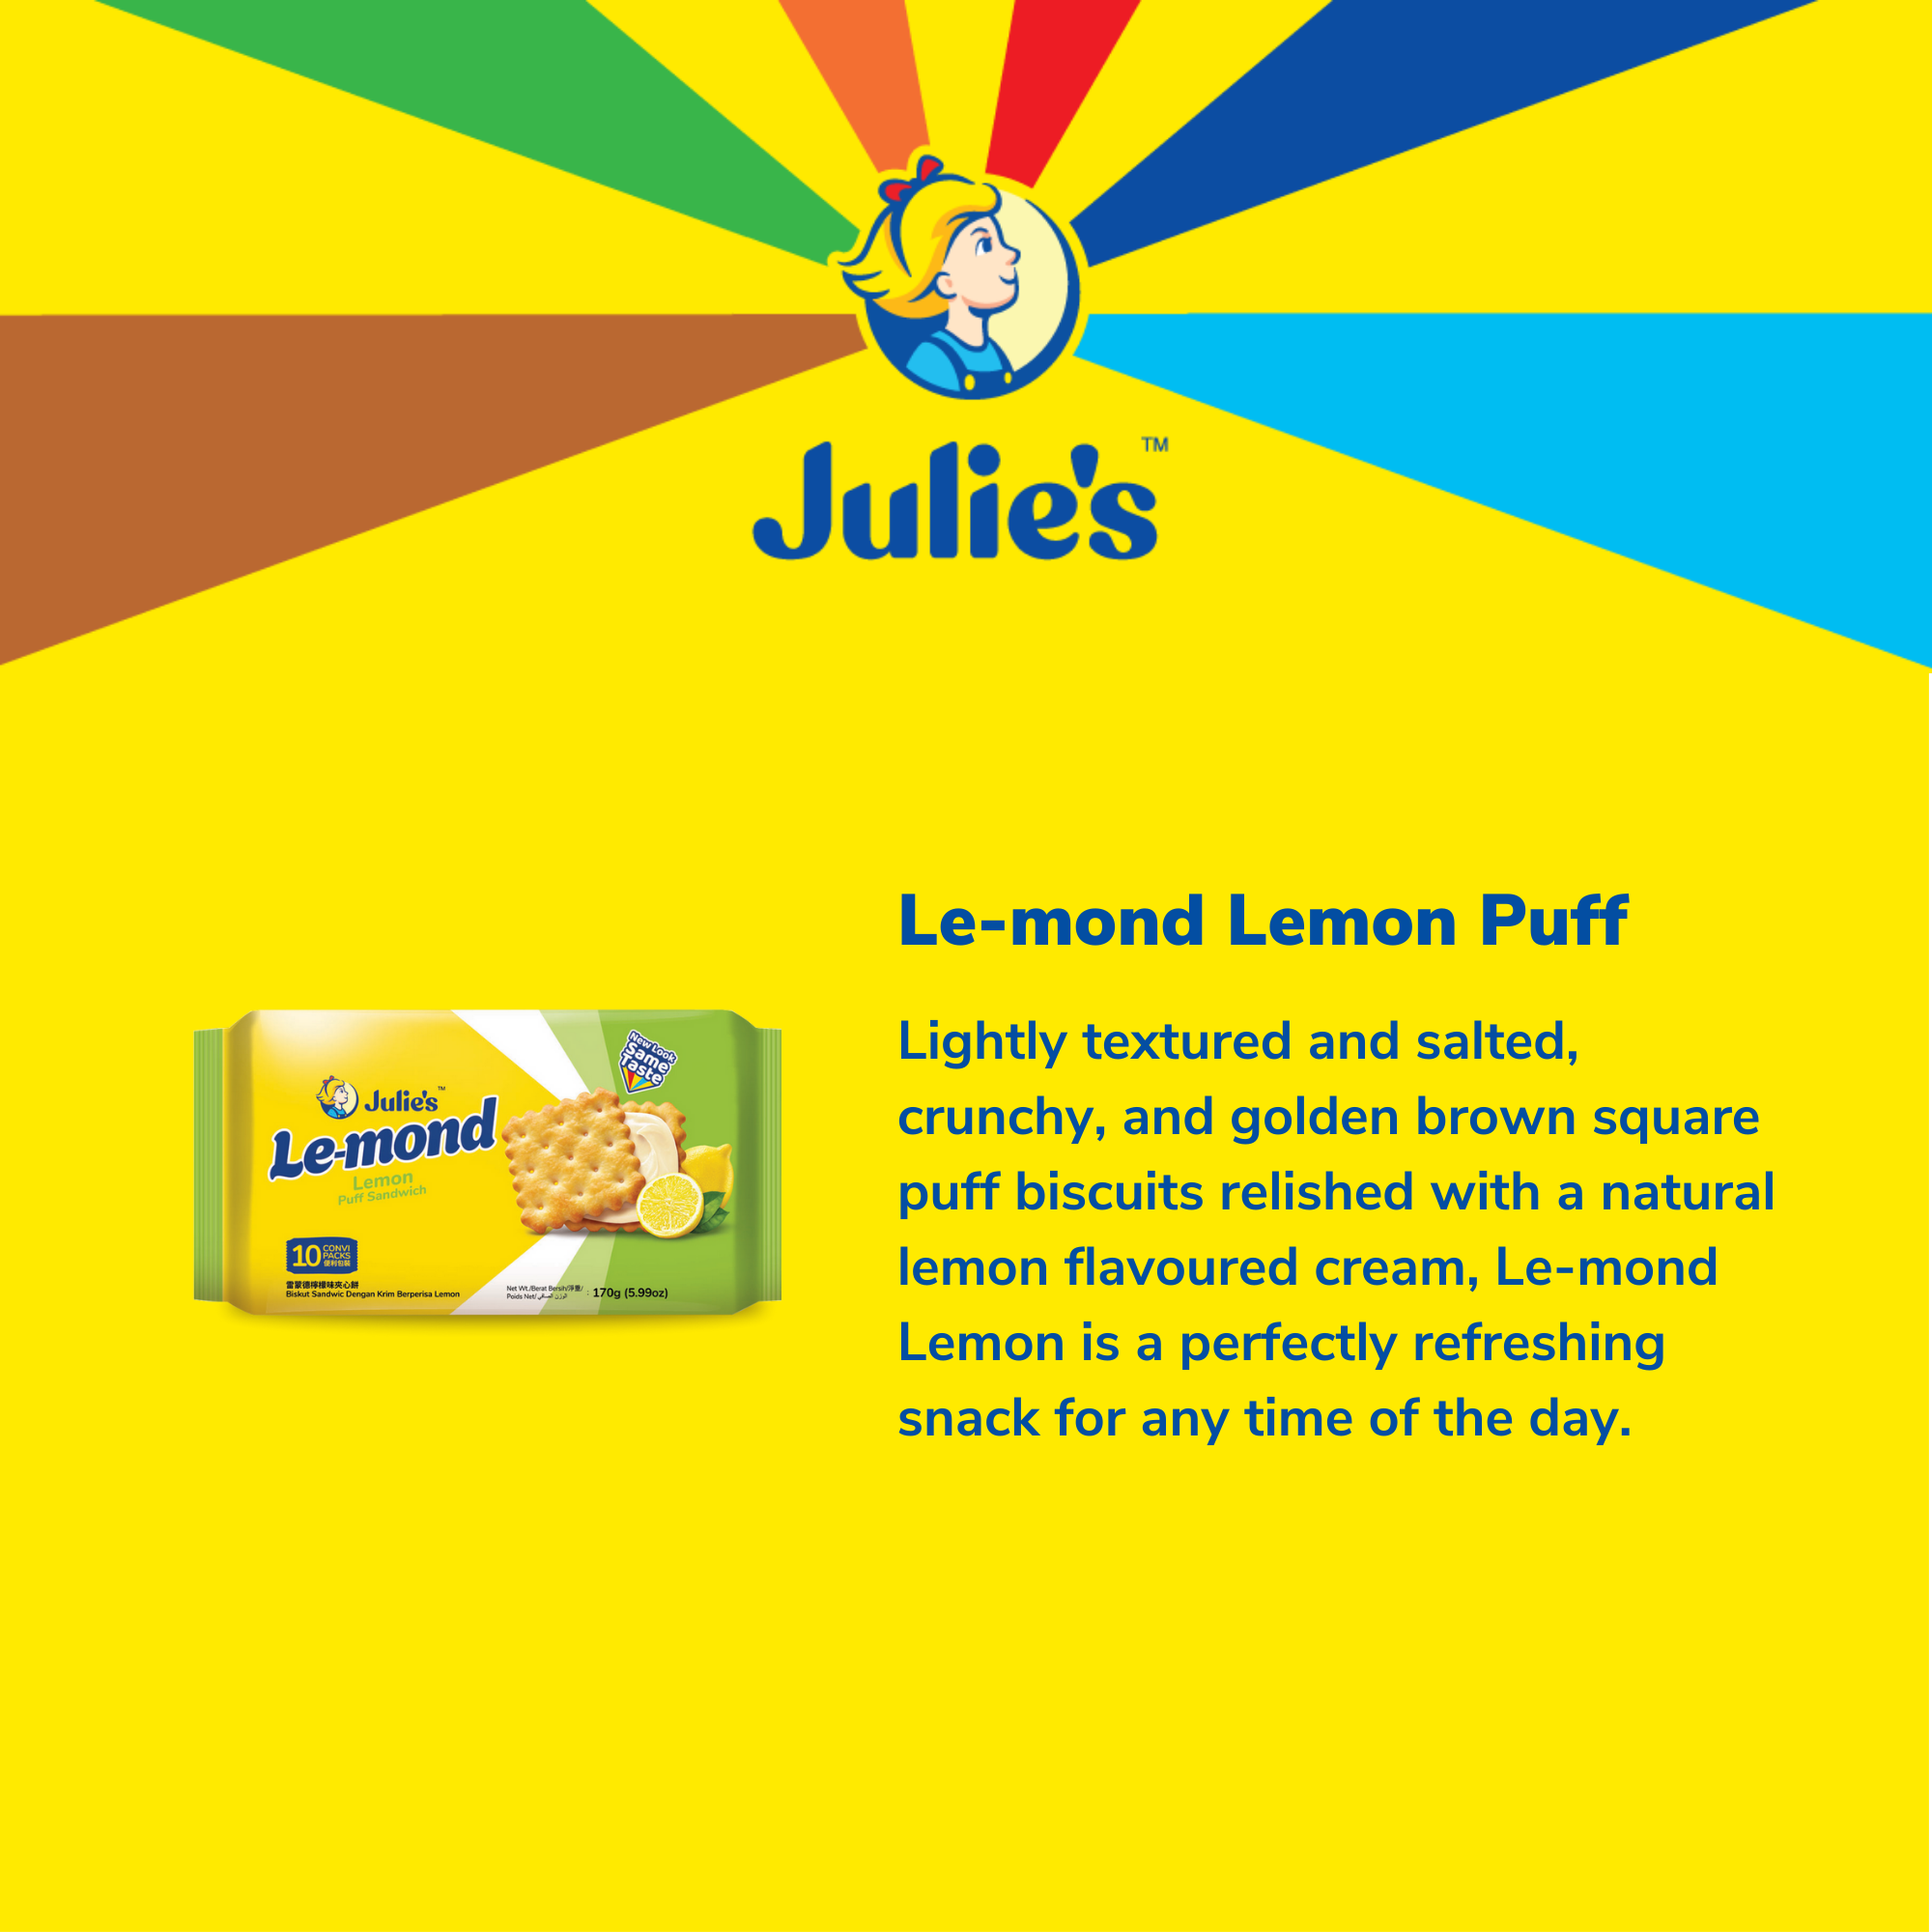 Julie's Le-mond Lemon Puff Sandwich 170g x 6 packs